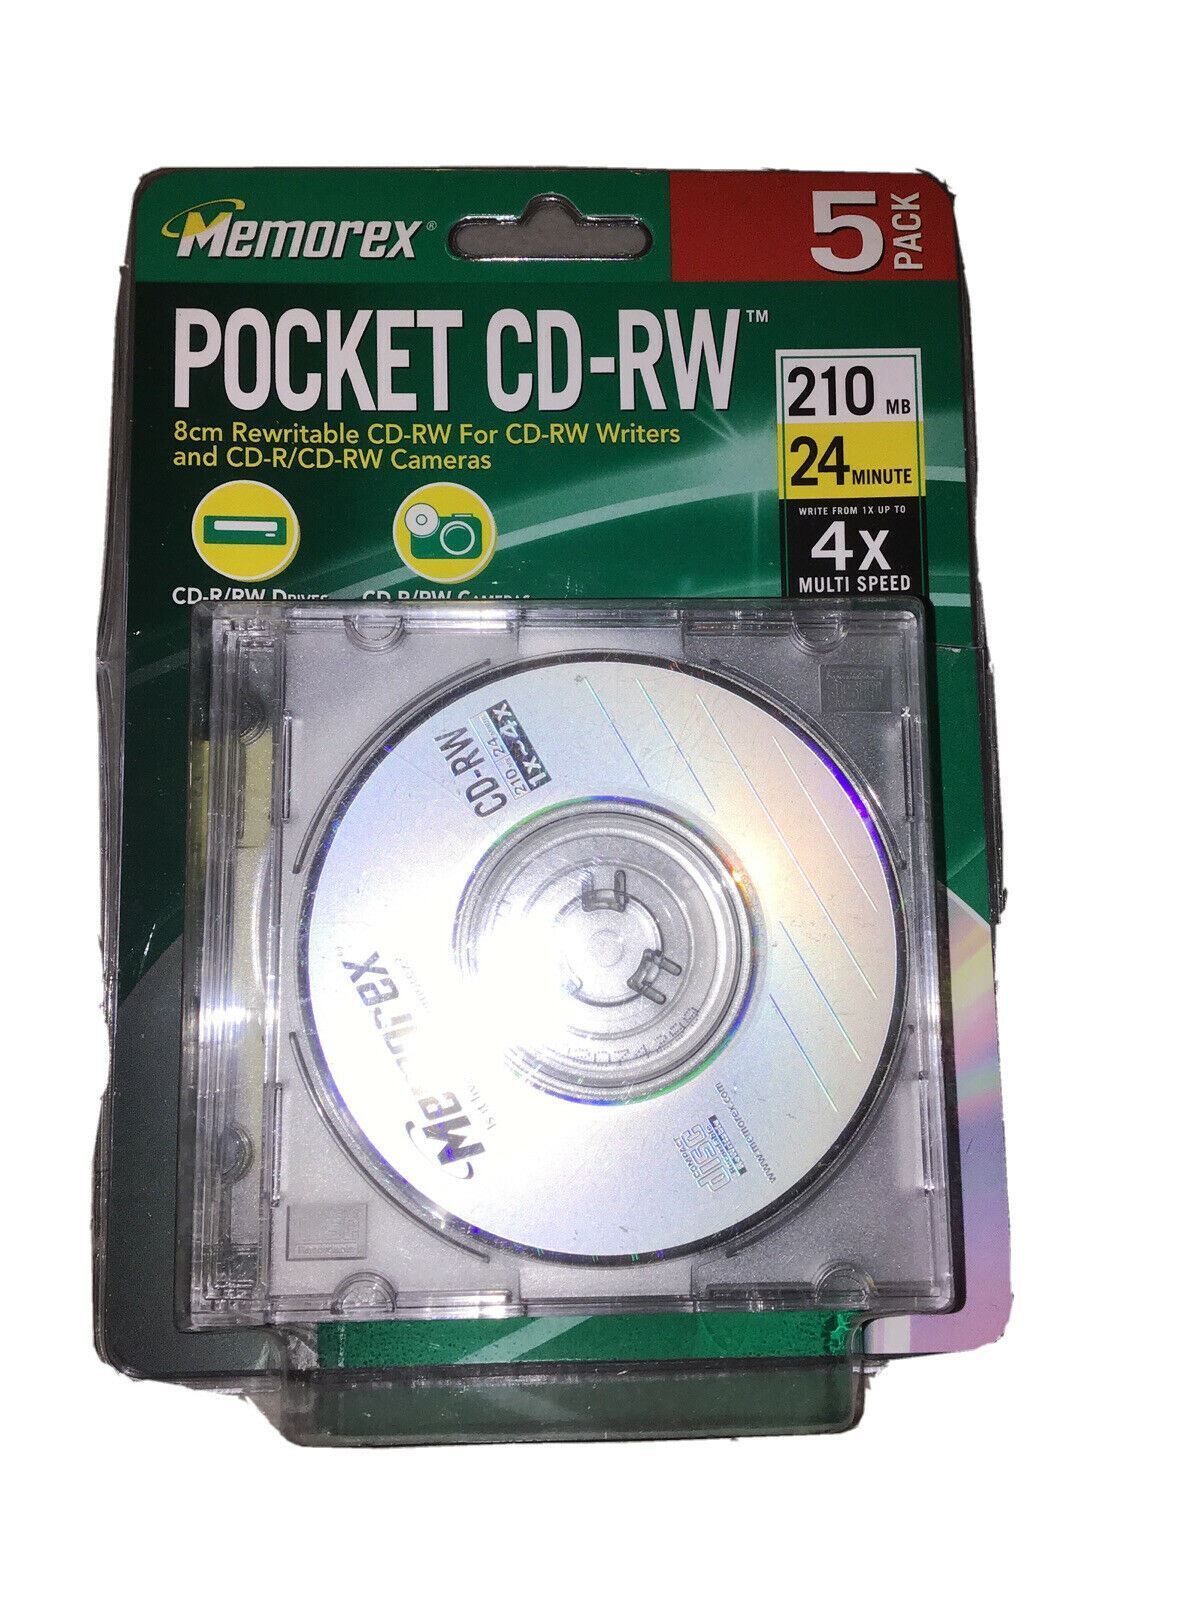 Memorex Pocket CD-RW 210 mb, 8cm Rewritable, 24 Minute 4x Speed (5-Pack)